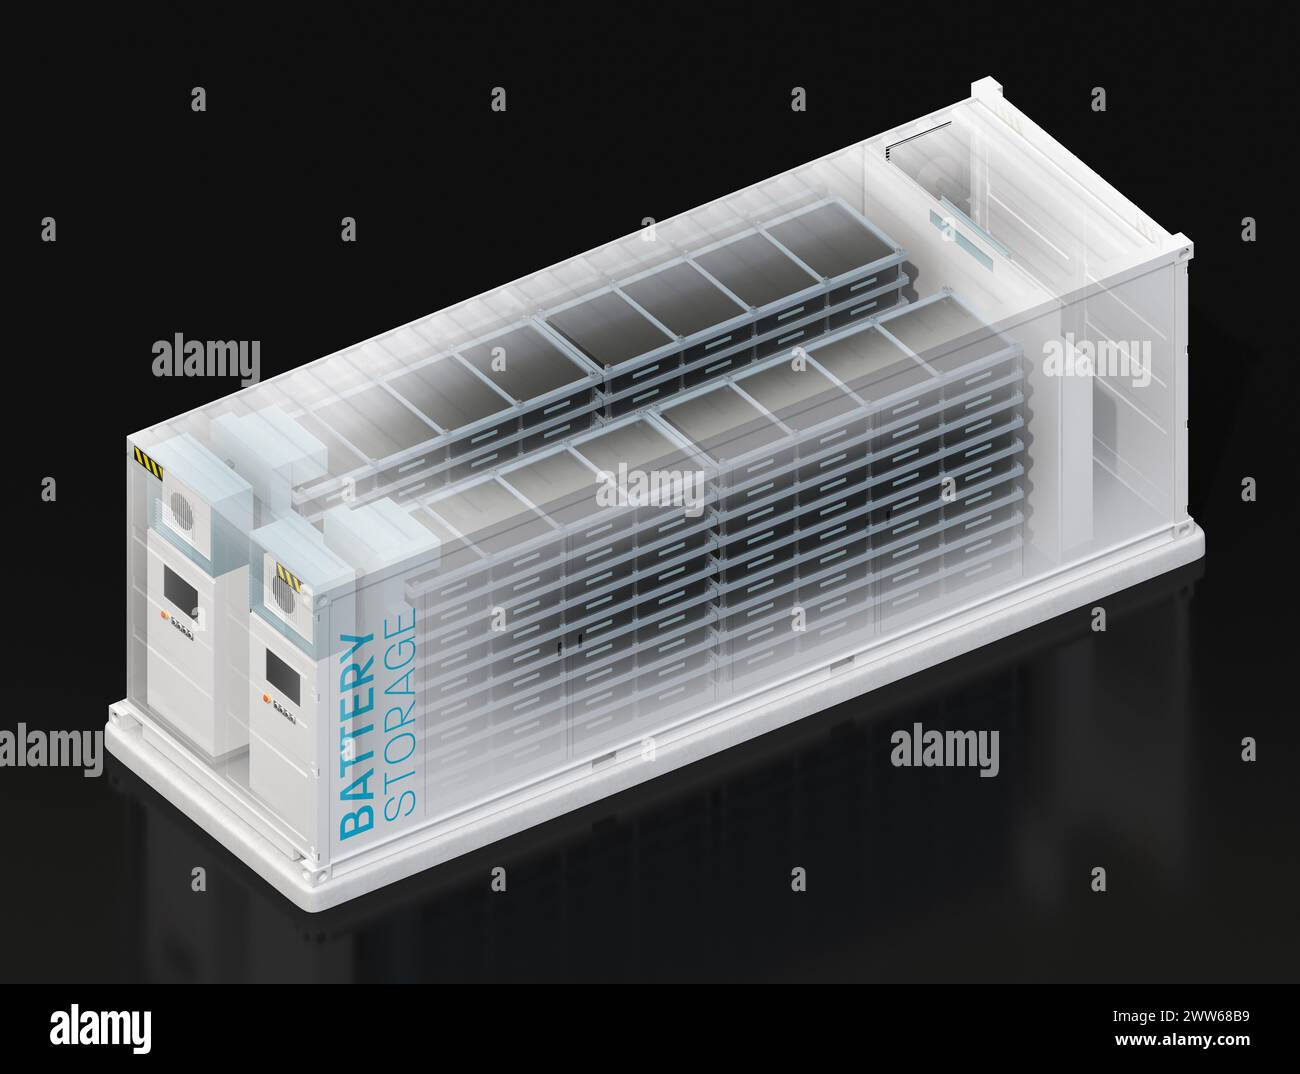 Effet fantôme du système de stockage d'énergie de batterie conteneurisé. Conception générique. Image de rendu 3D. Banque D'Images